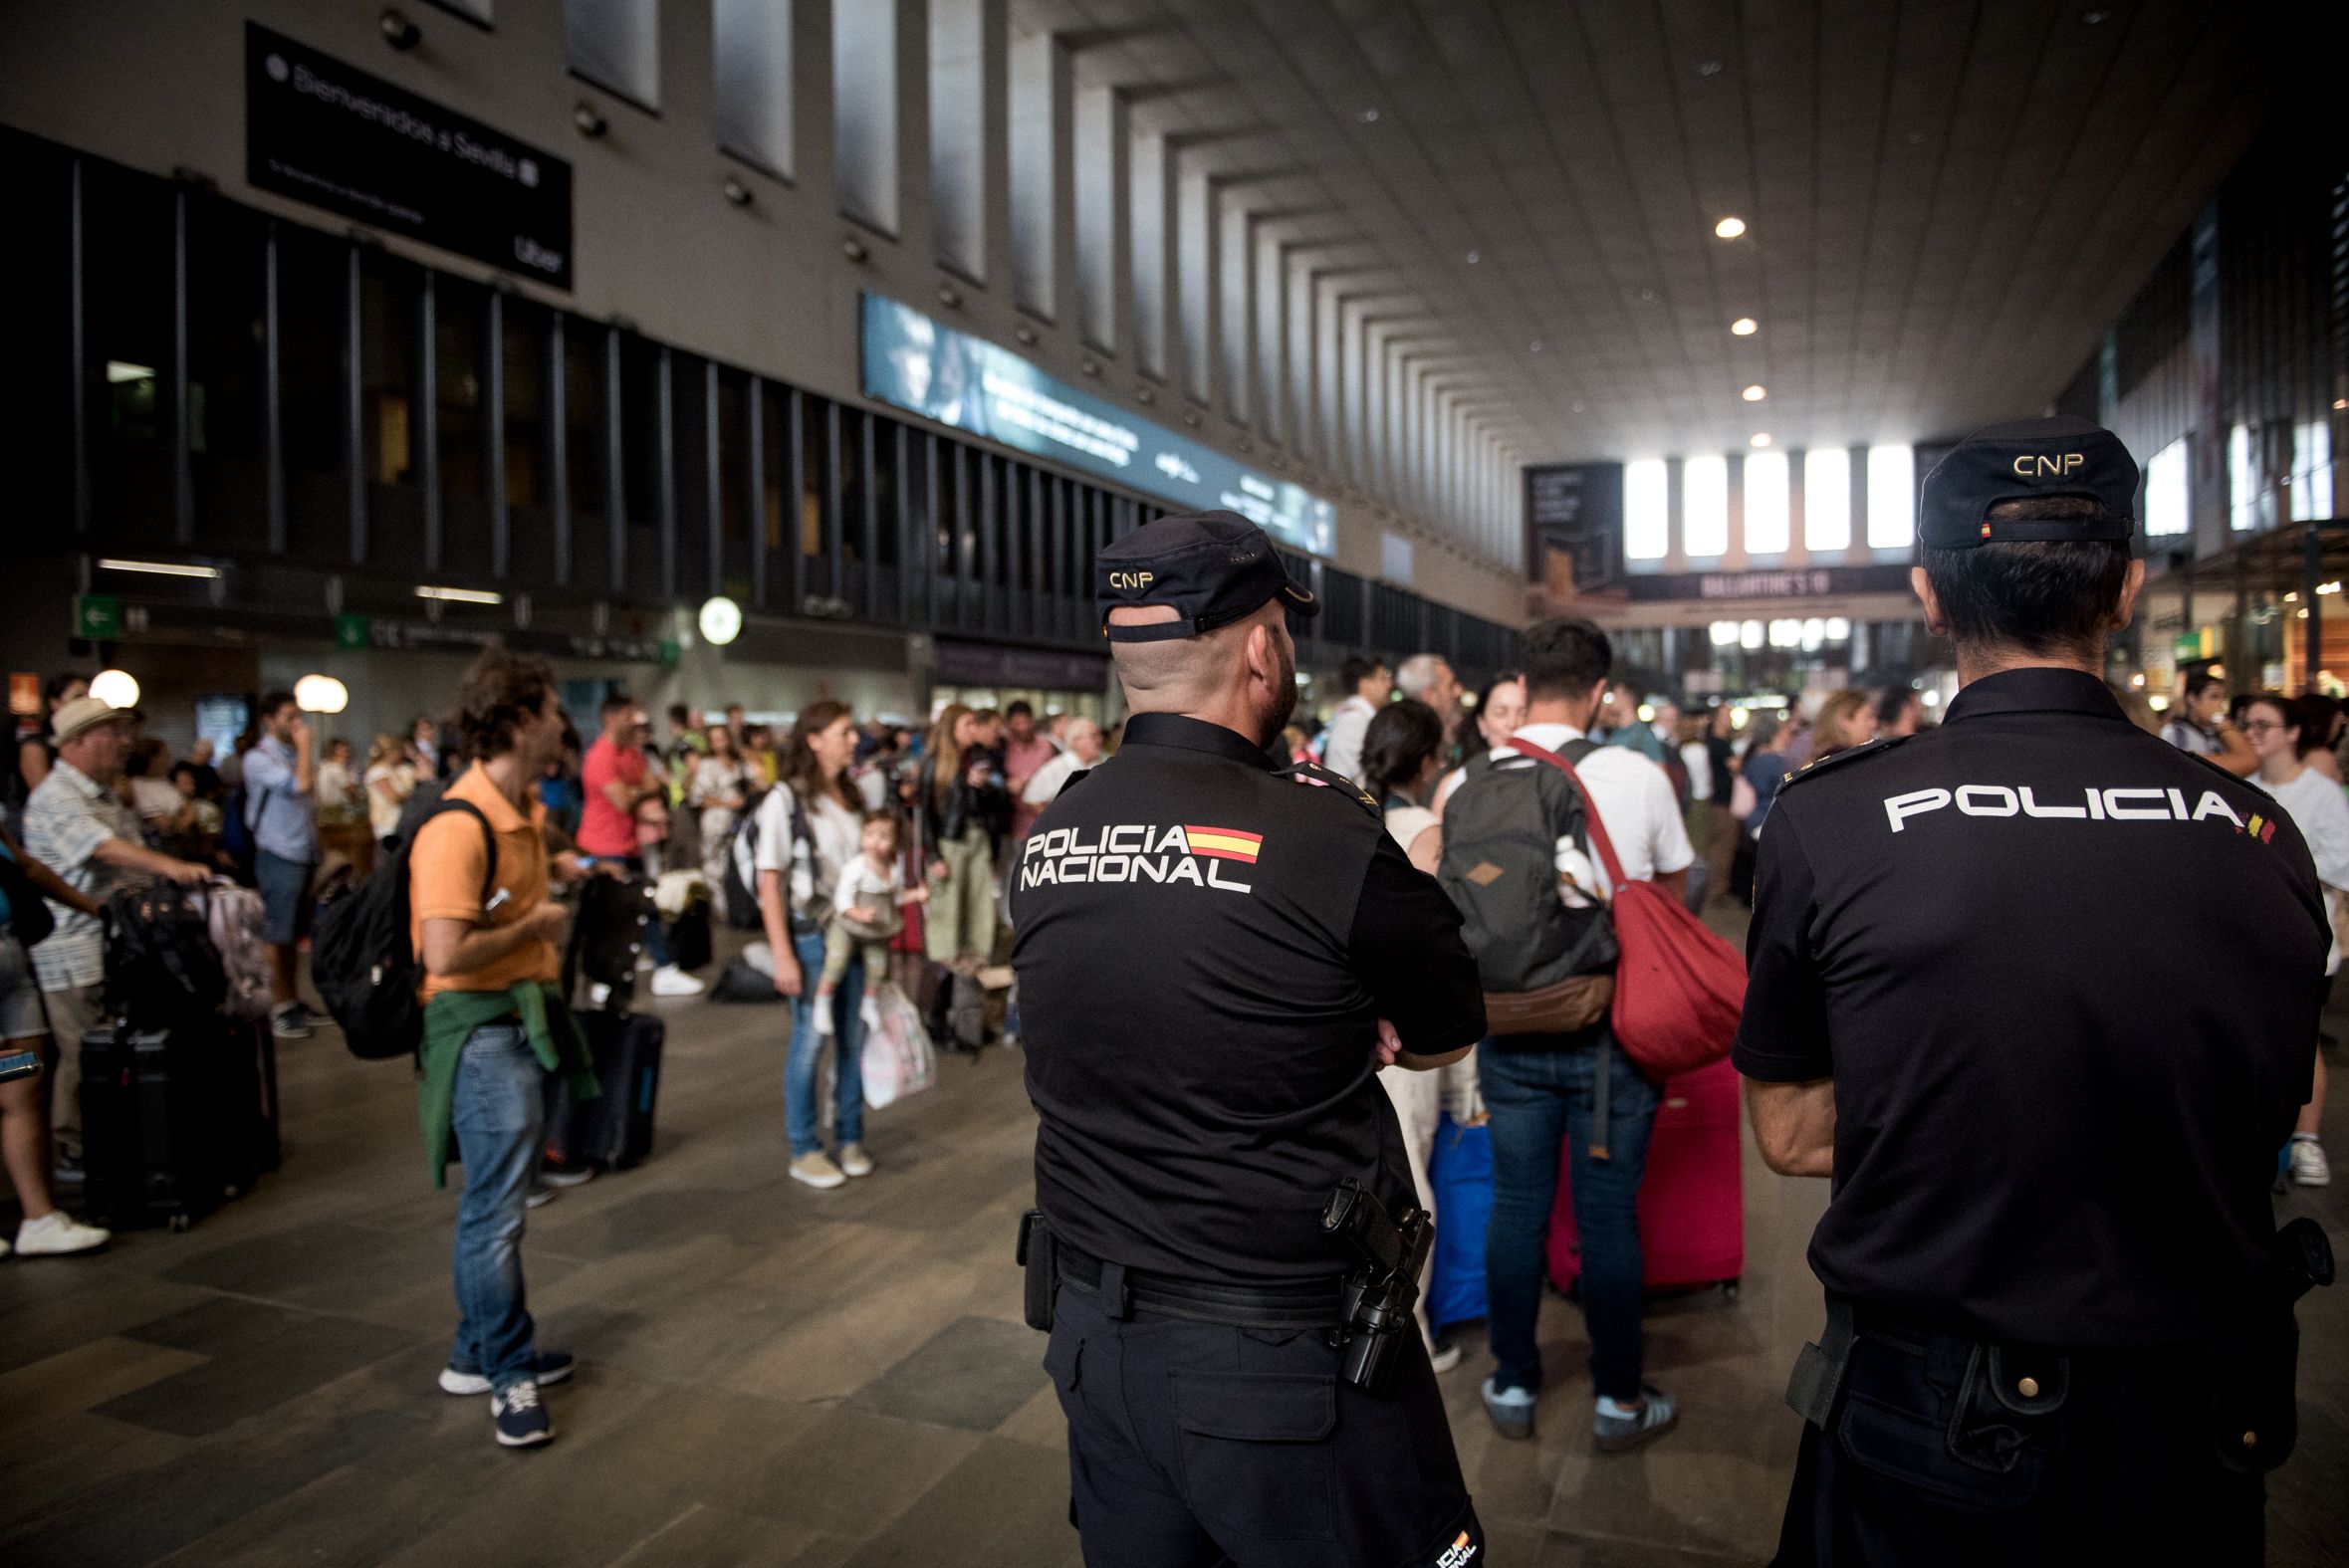 Dos agentes de Policía en la estación de Santa Justa, donde estuvo Álvaro Prieto antes de fallecer el pasado jueves 12 de octubre.